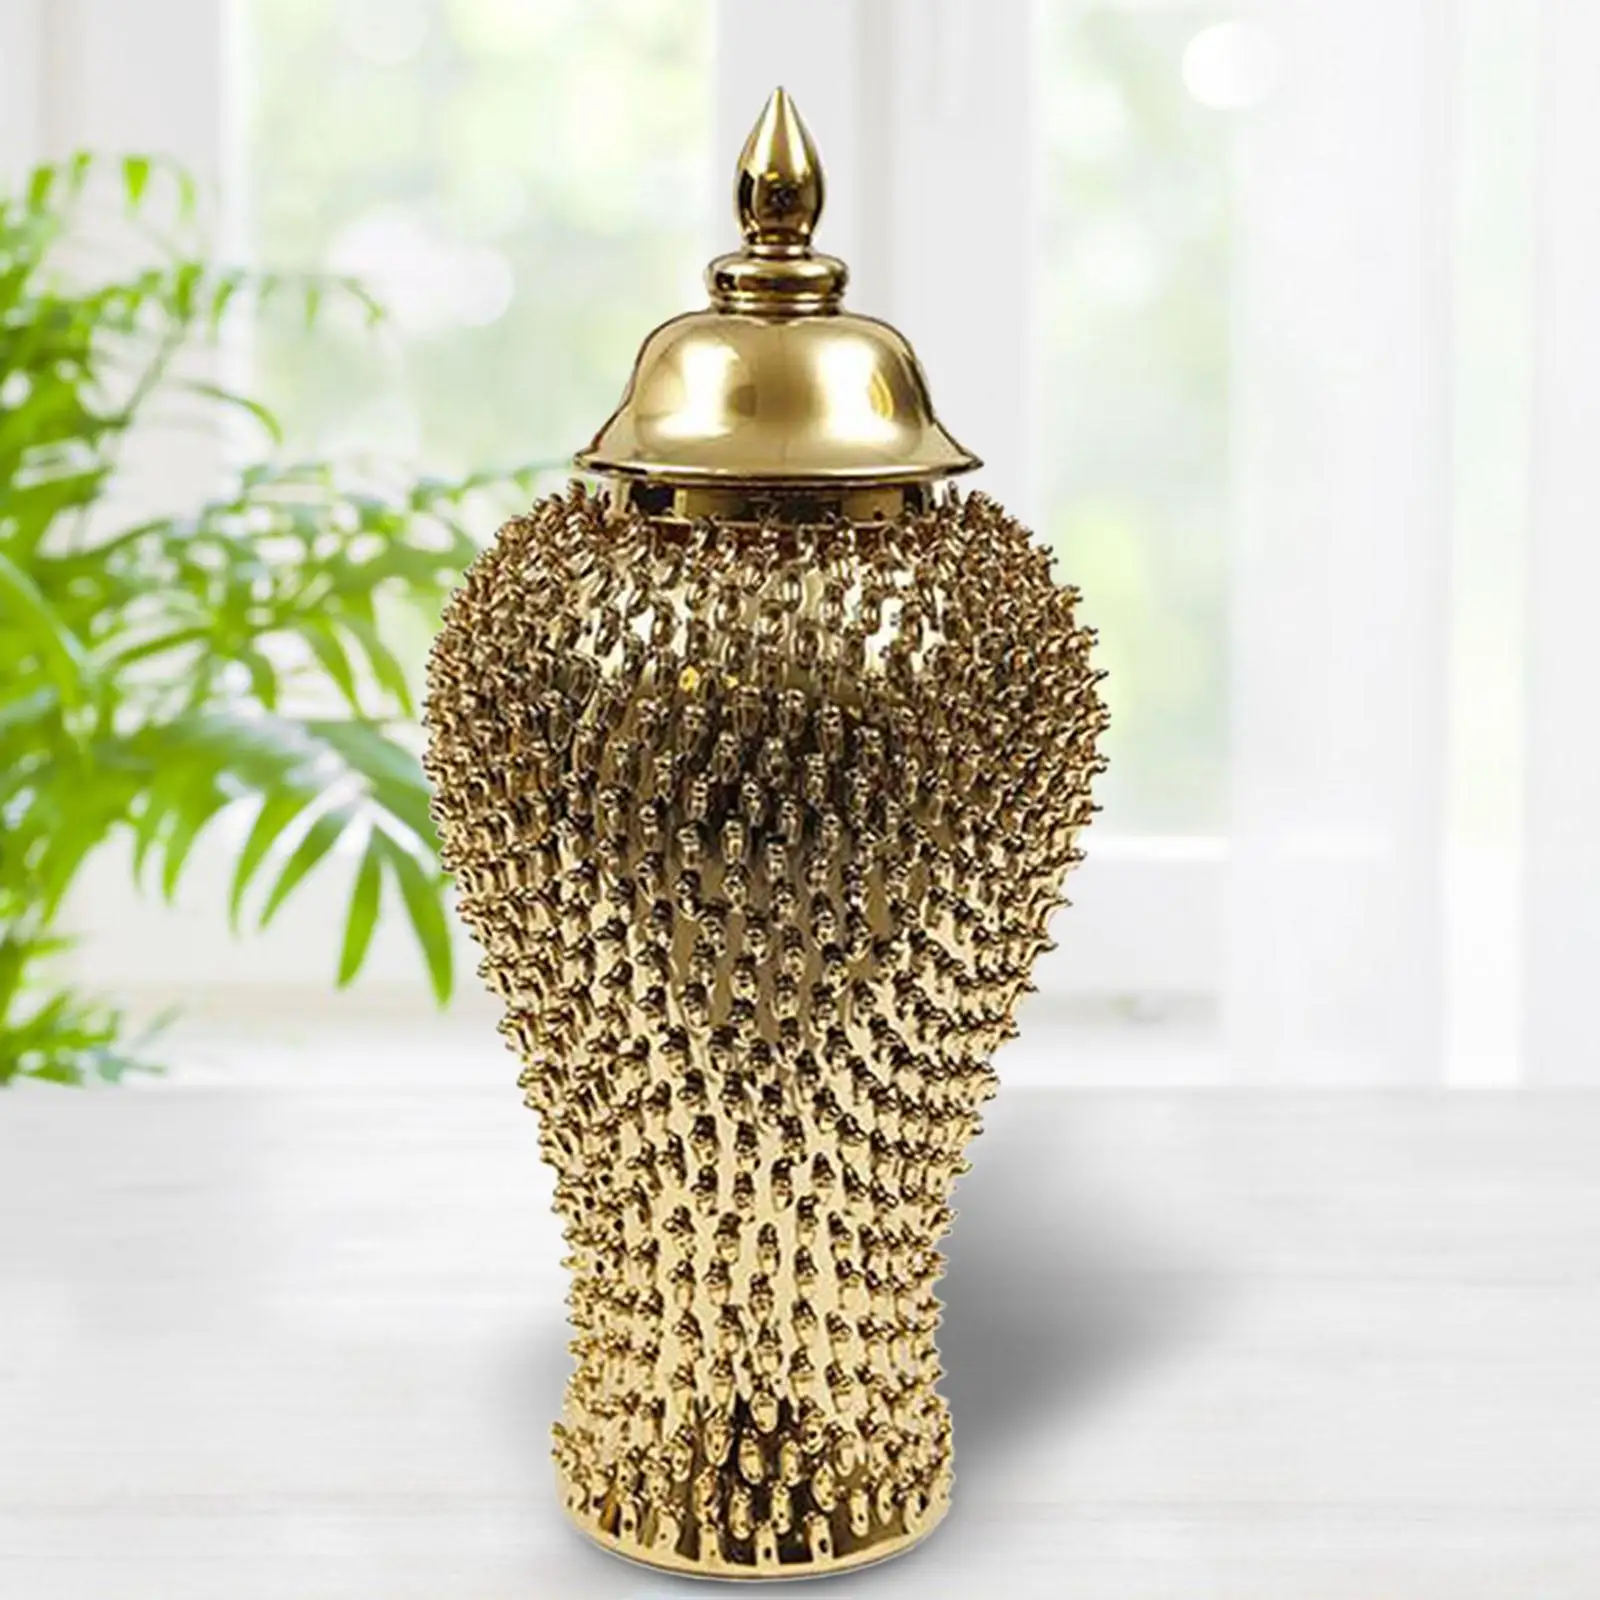 Traditional Ceramic Ginger Jar Porcelain Storage Tank Flower Vase for Office